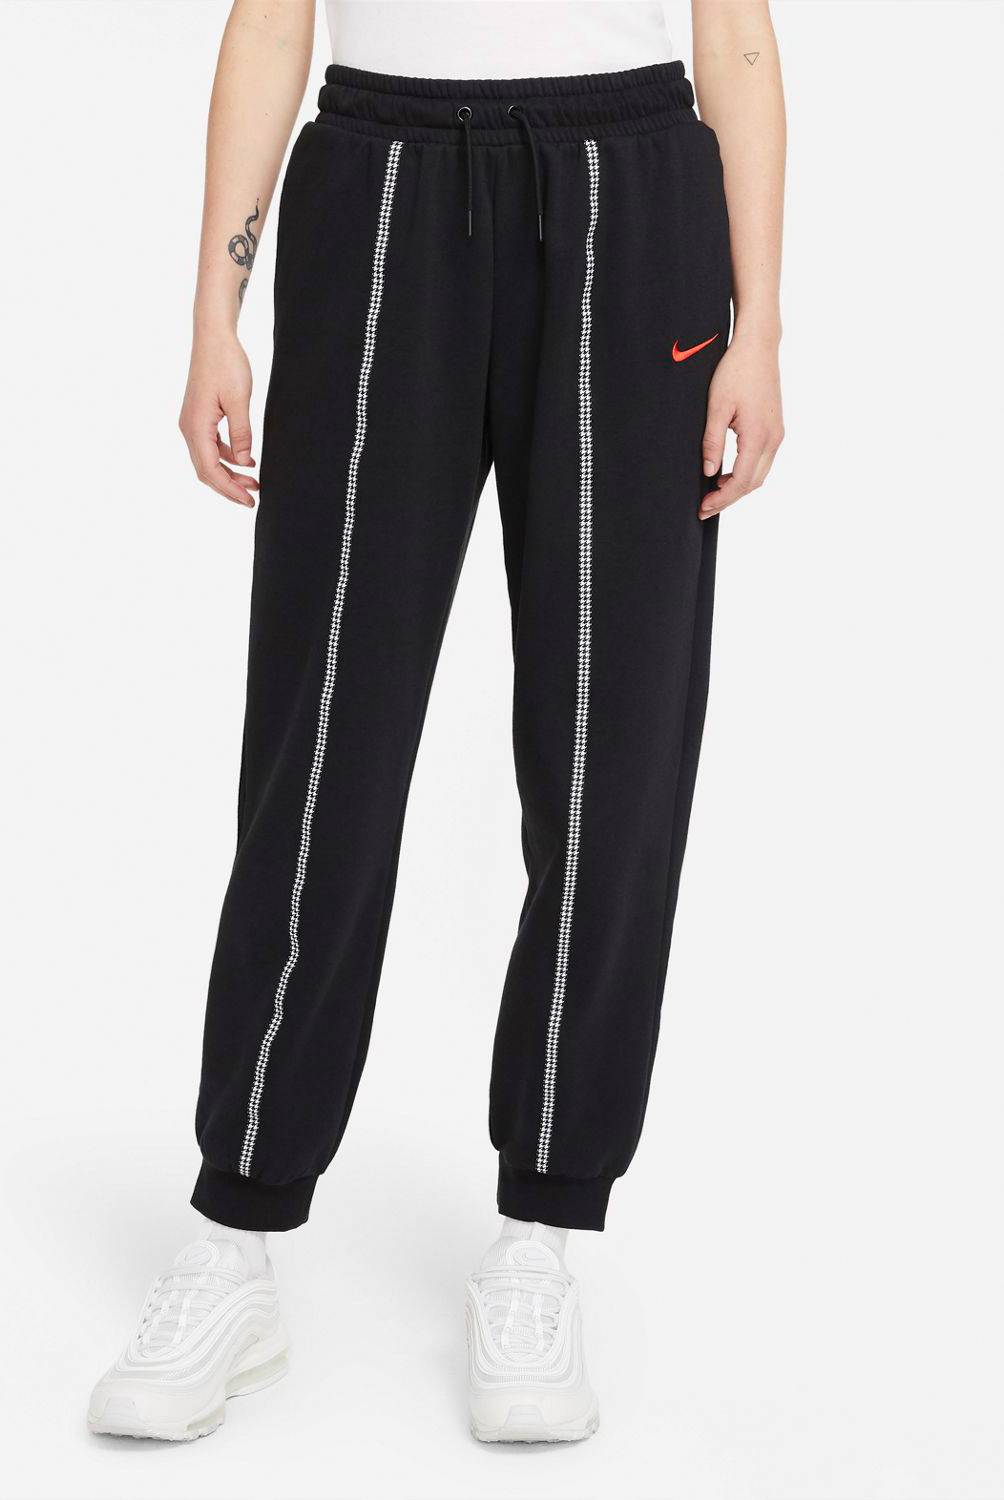 Nike - Nike Pantalón de Buzo Deportivo Mujer